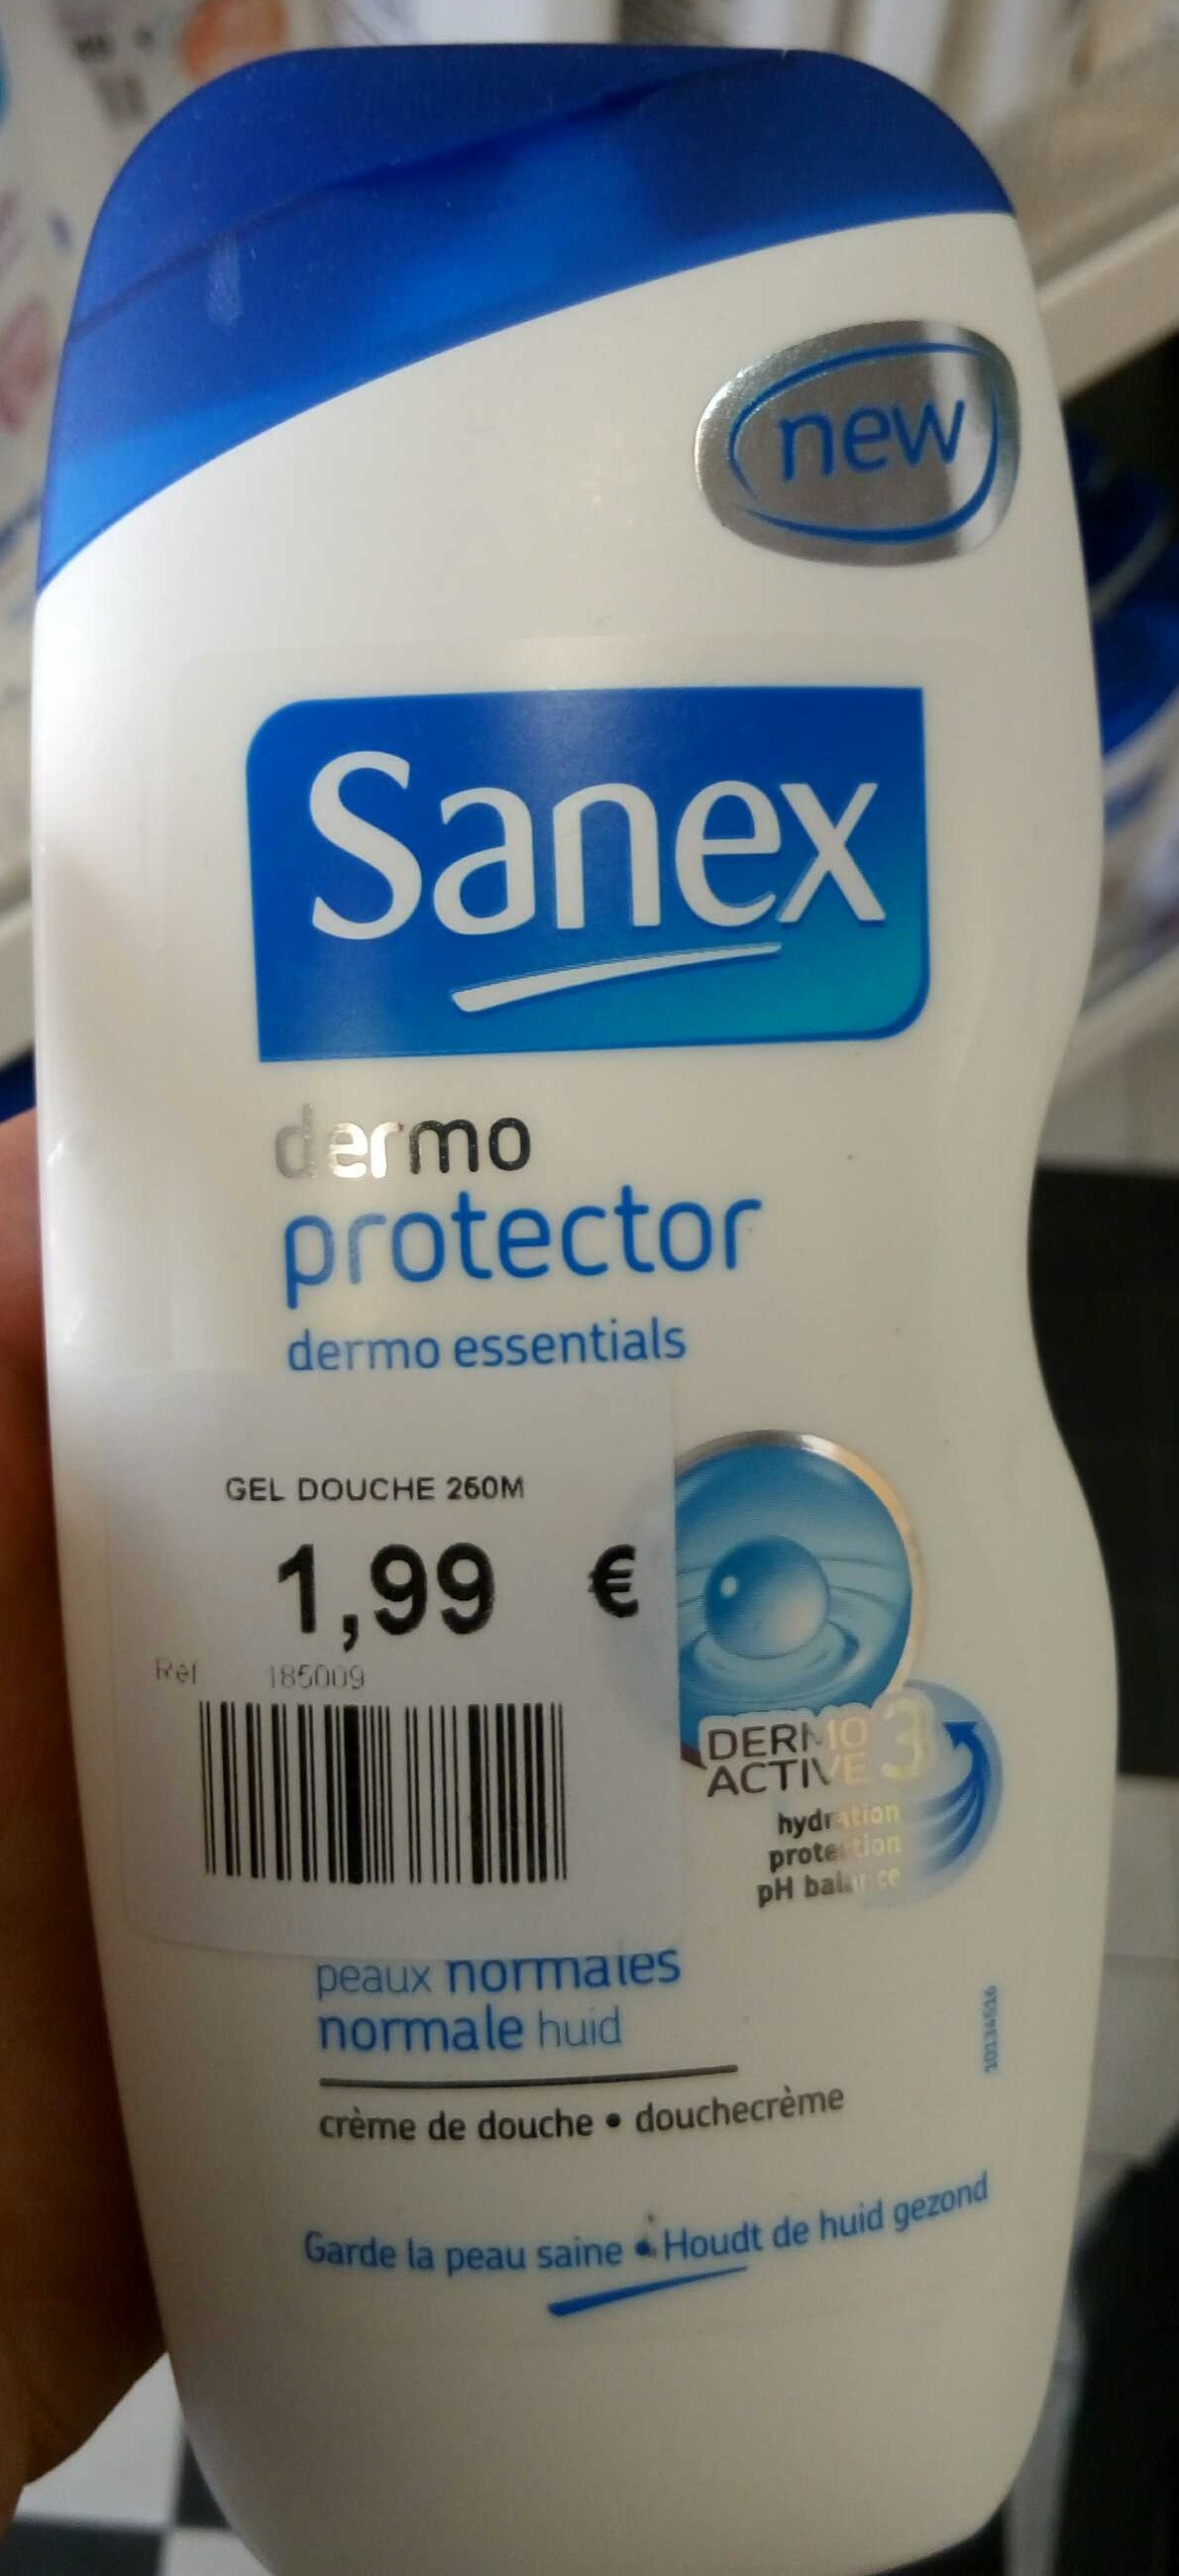 Sanex dermo protector - peaux normales - Produit - fr